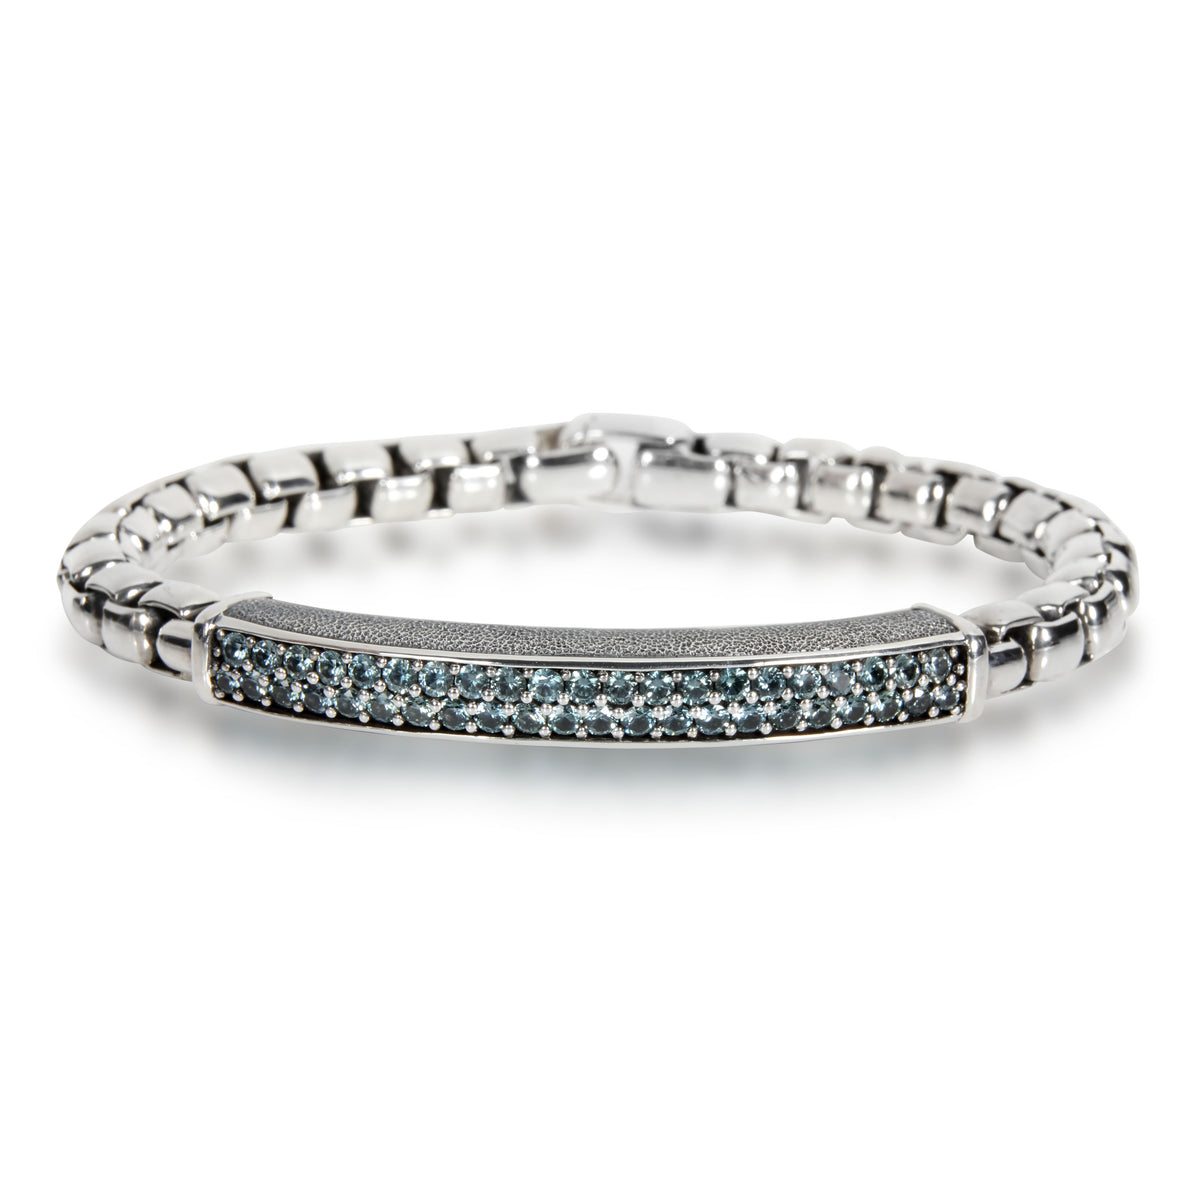 David Yurman Streamline Sapphire Bracelet in  Sterling Silver